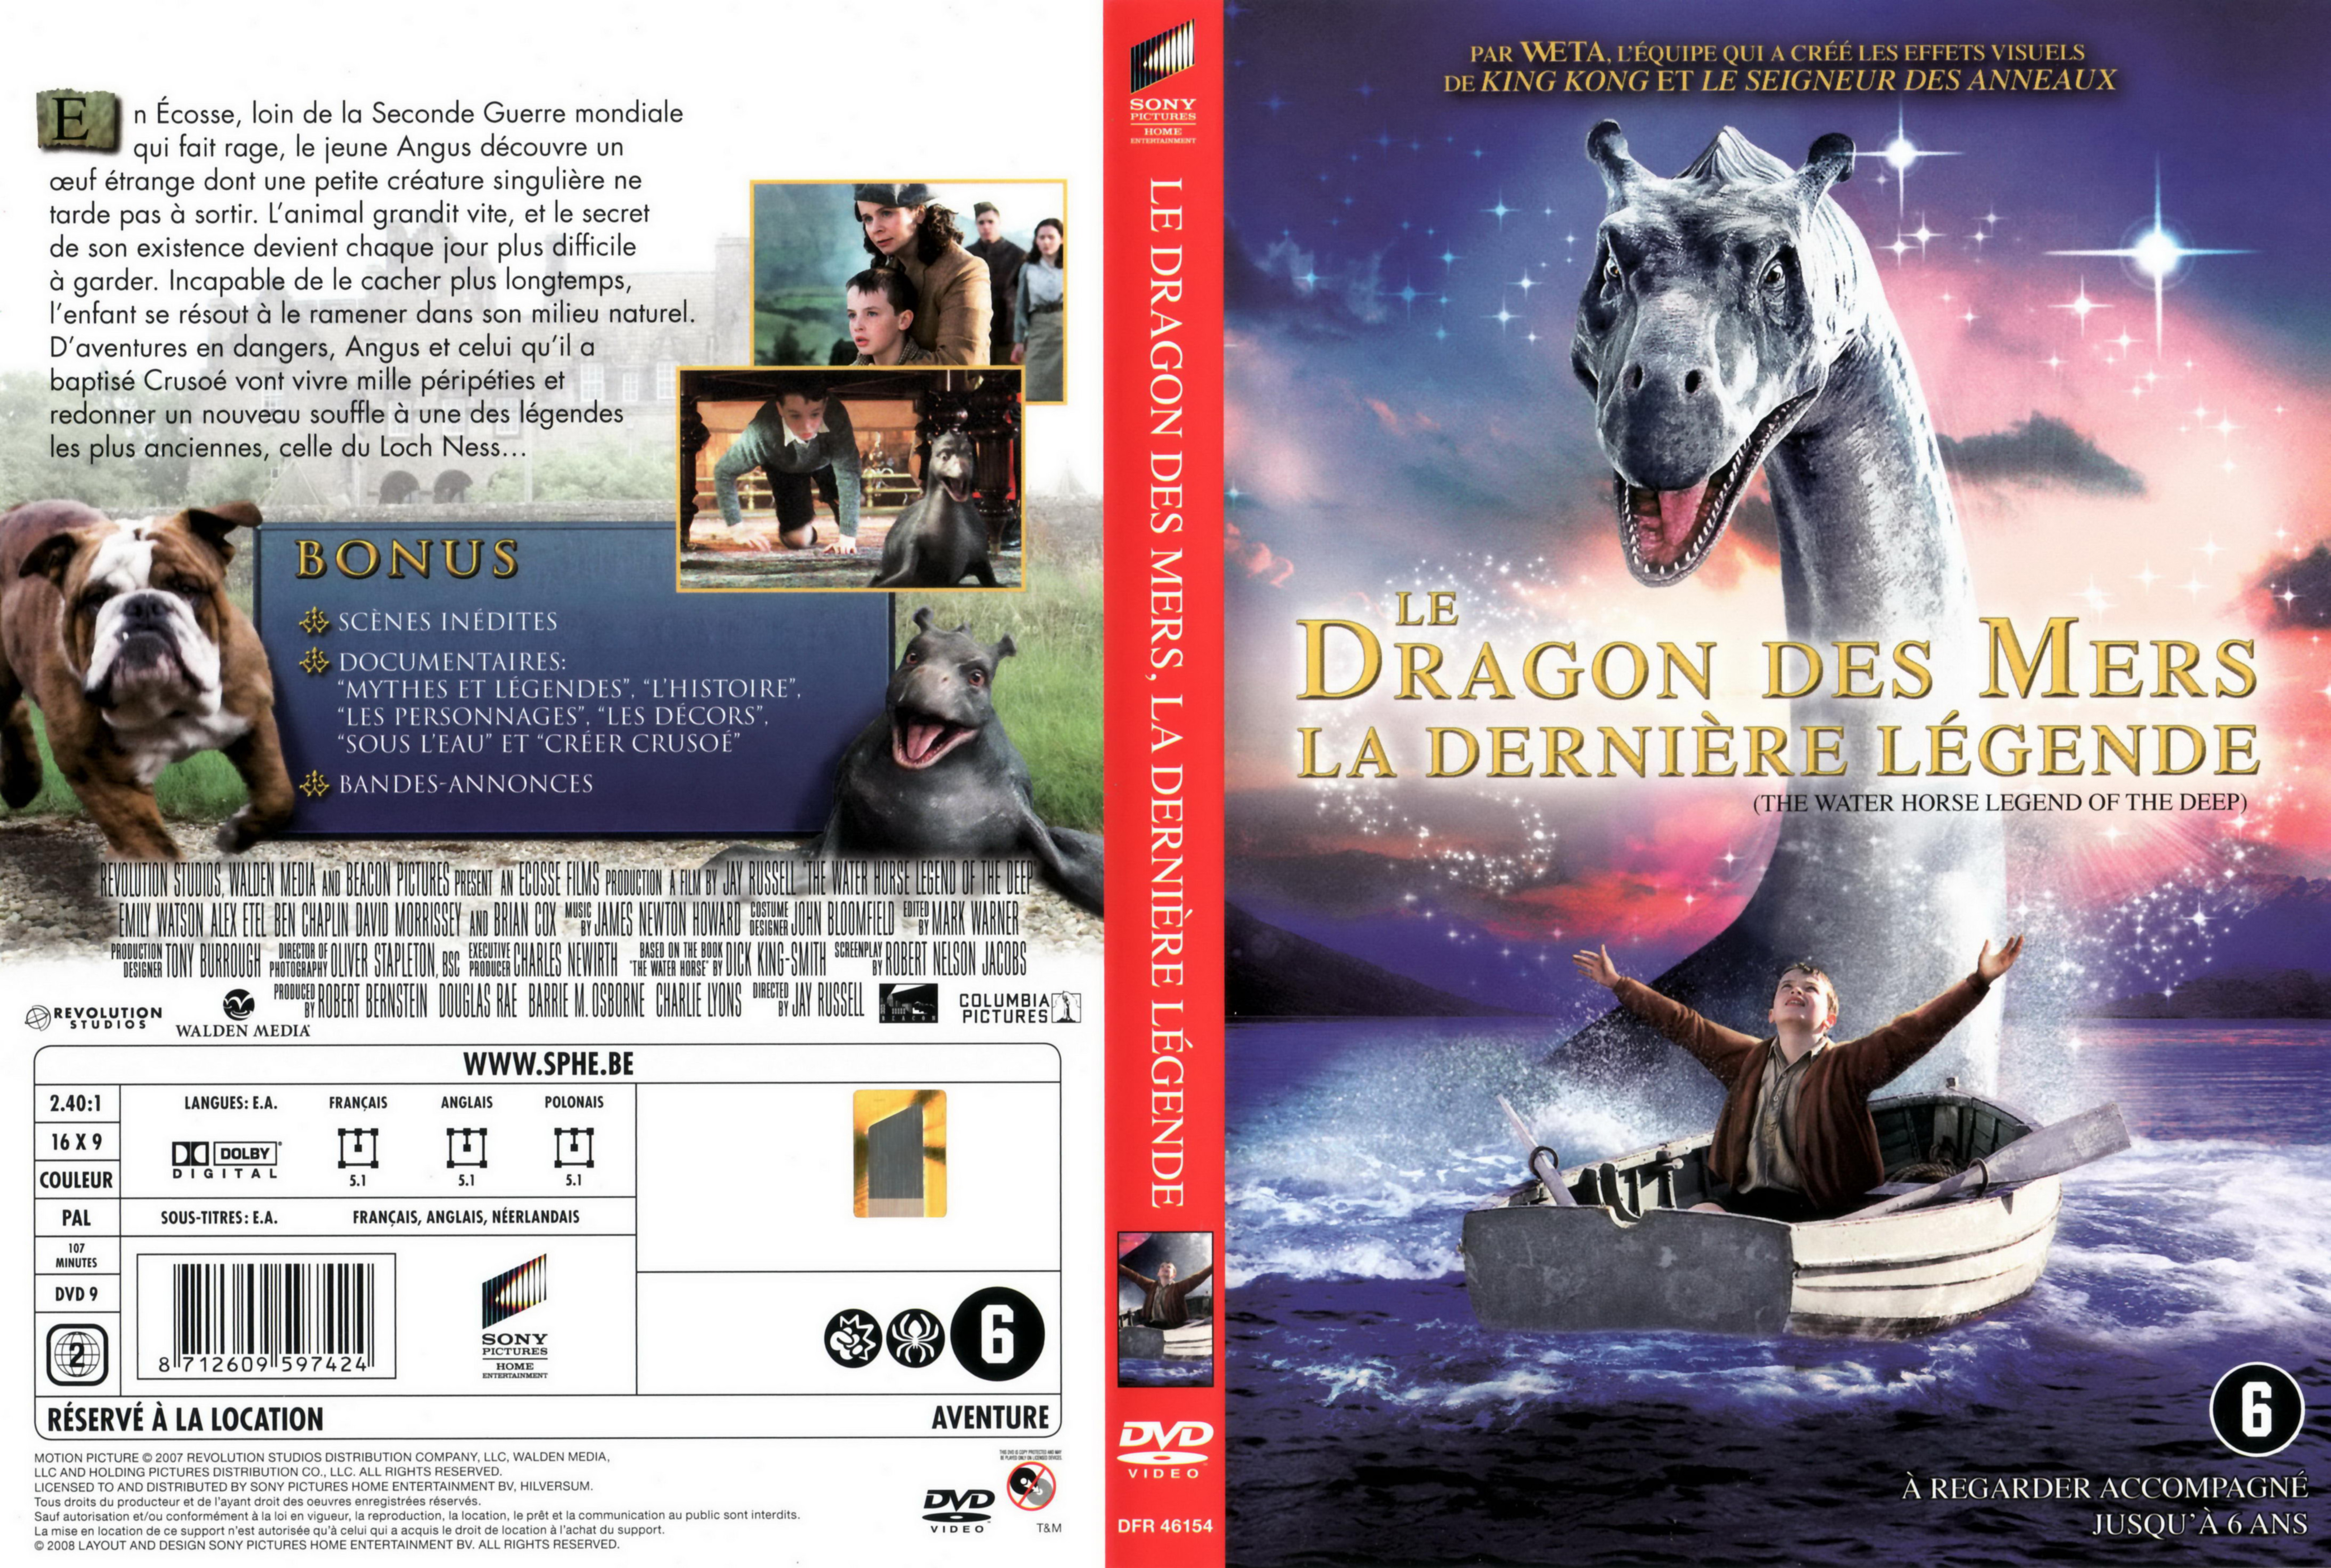 Jaquette DVD Le dragon des mers v2